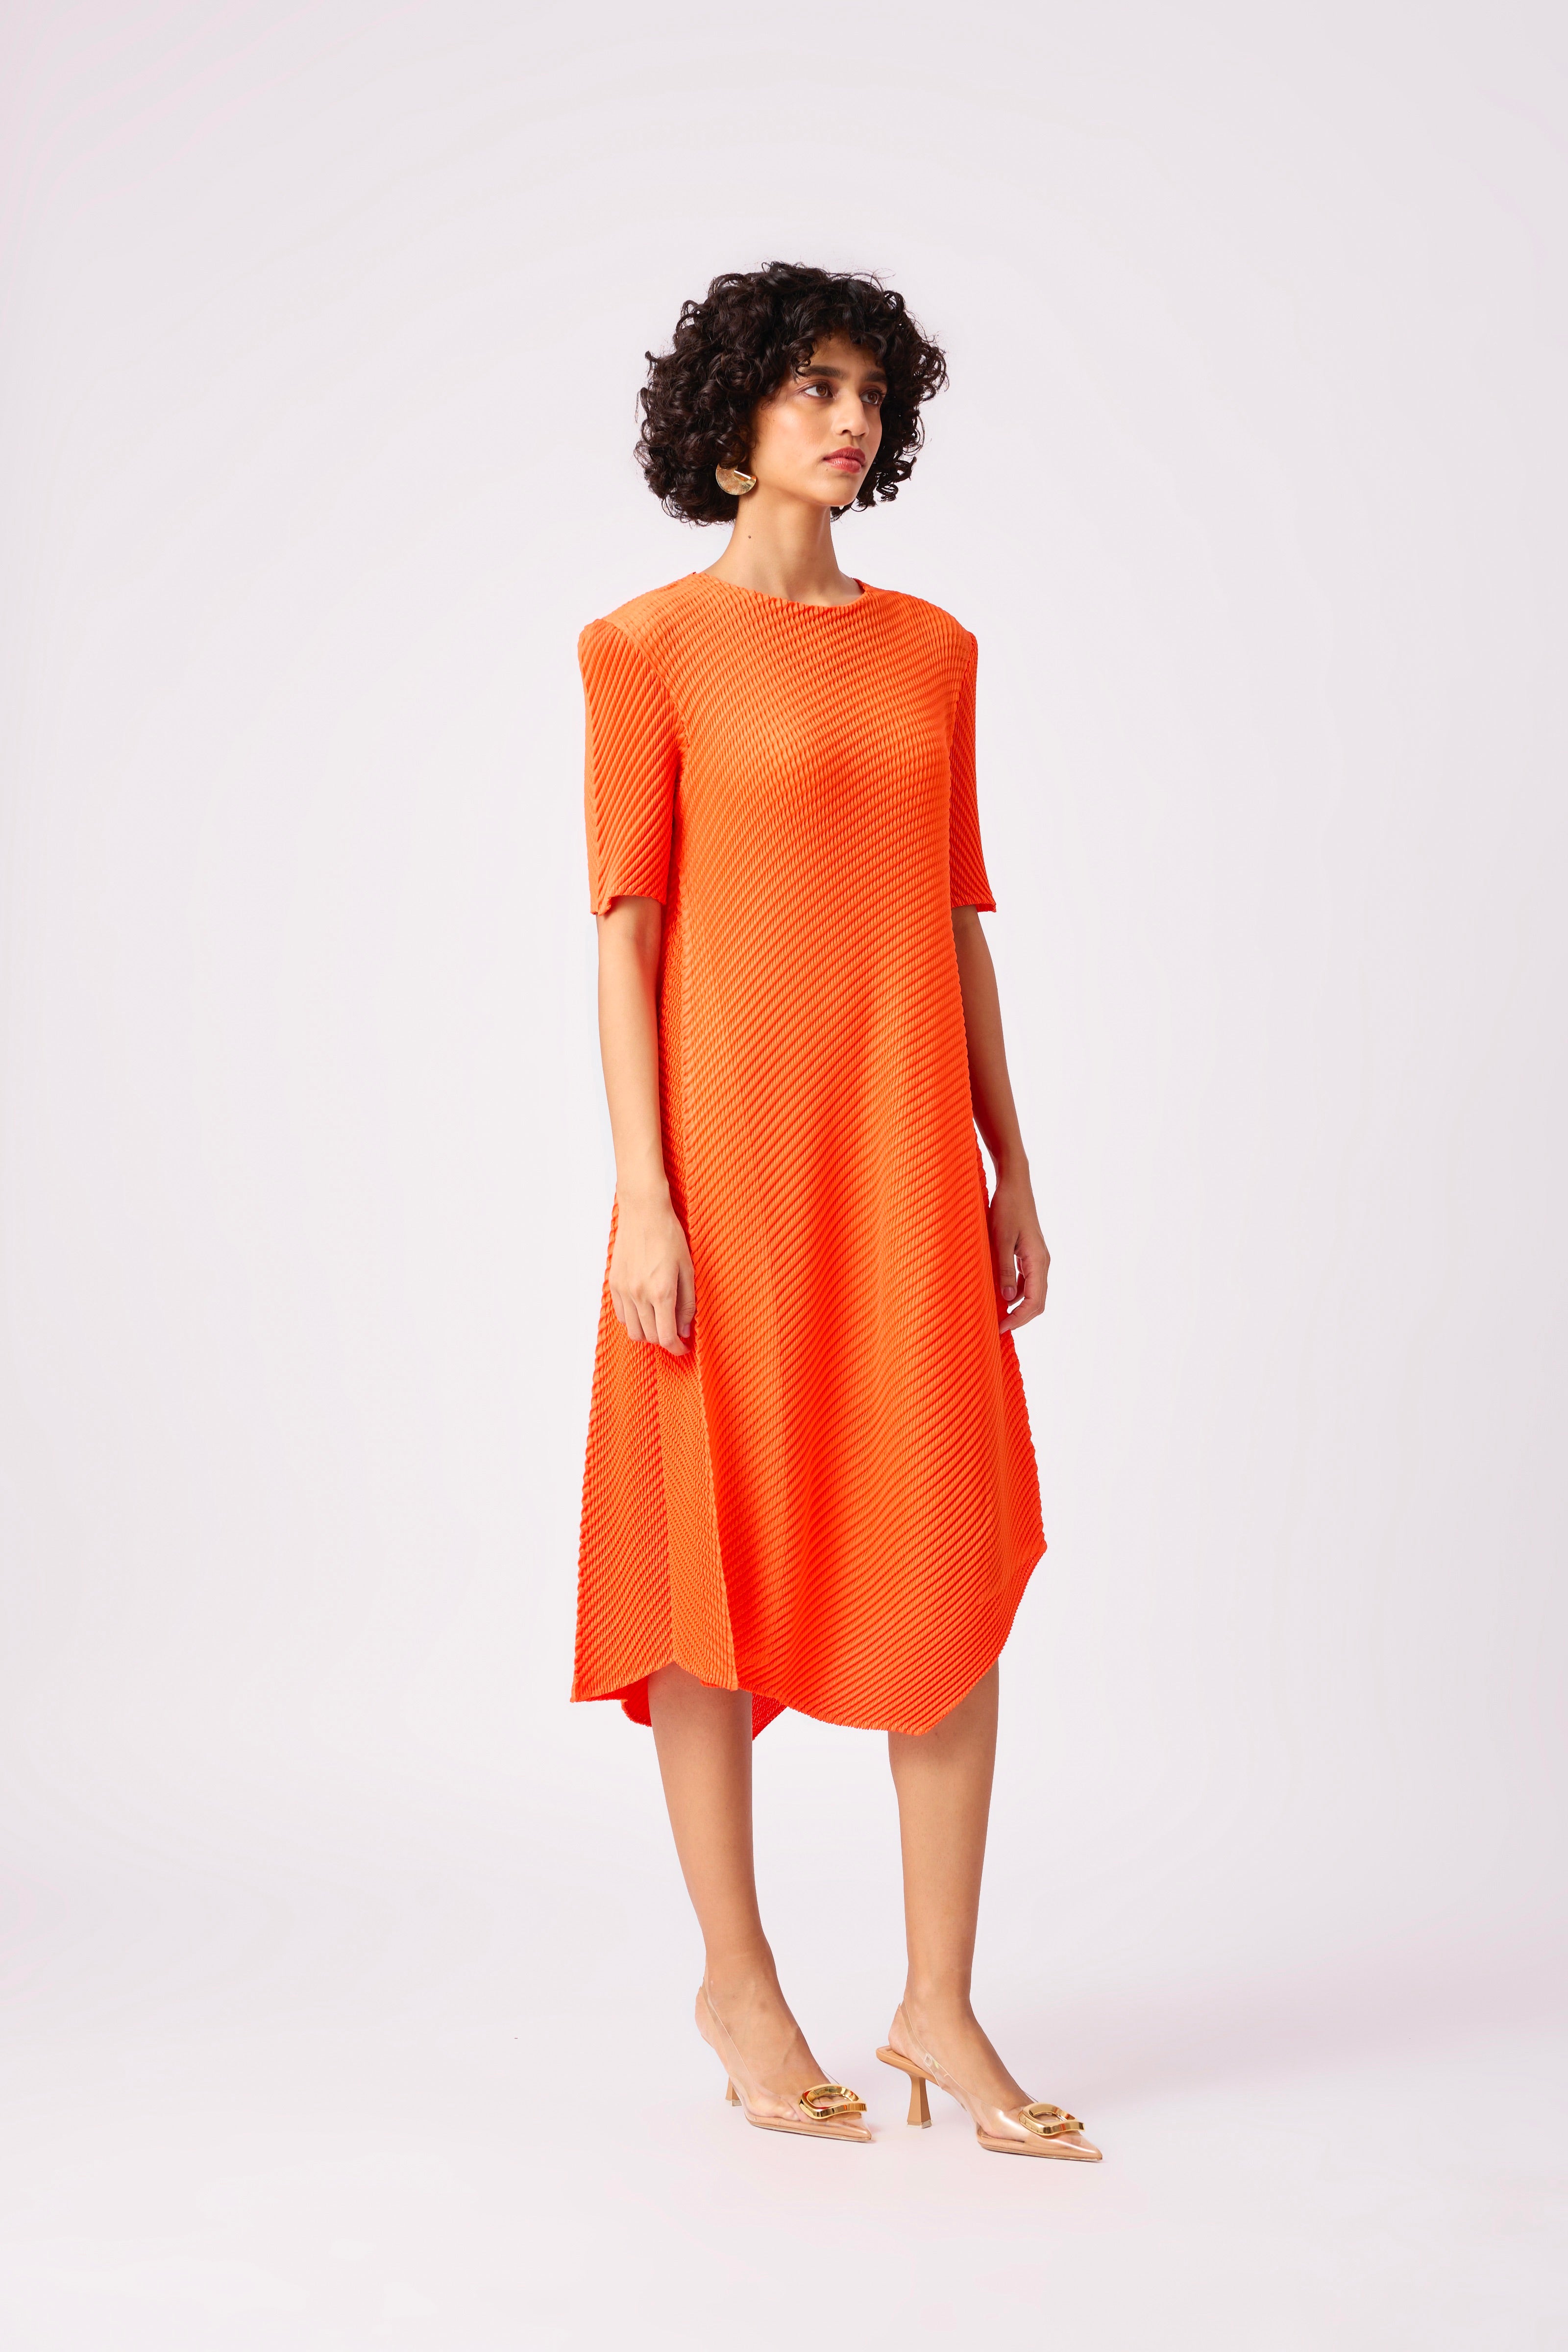 Allegra Dress - Orange